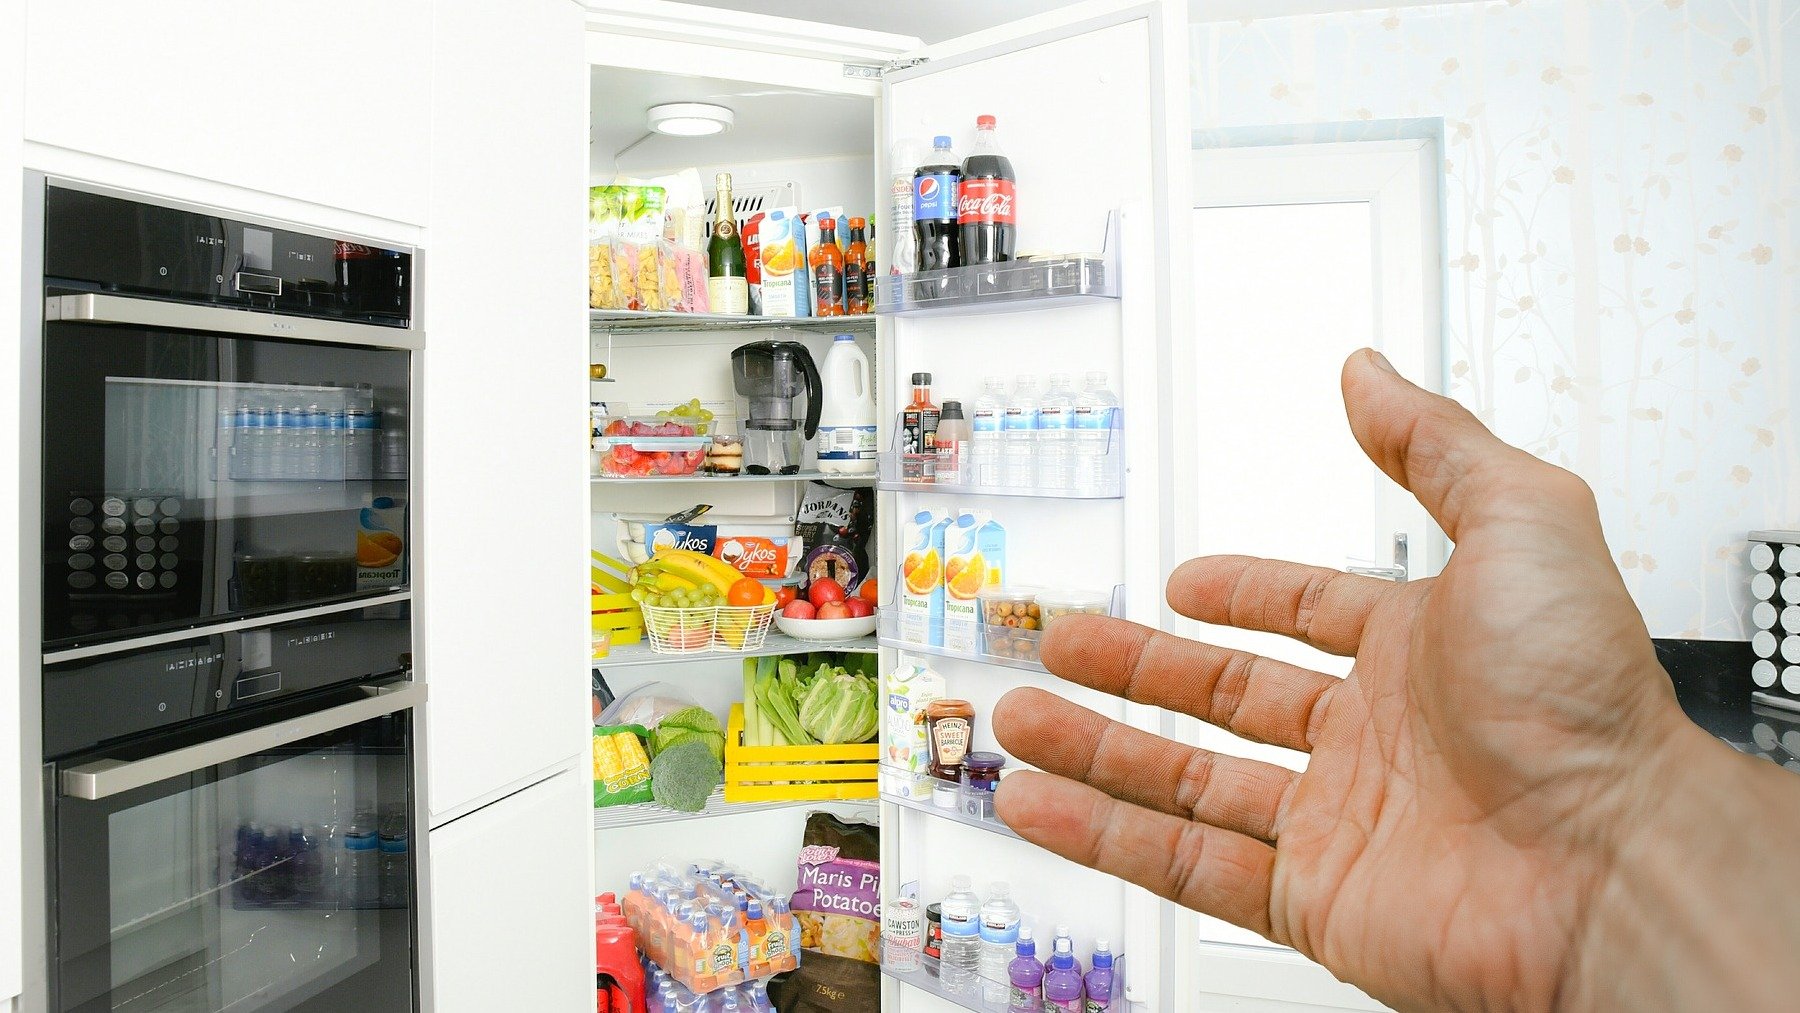 Si tienes este alimento en el frigorífico, ¡sácalo de inmediato!